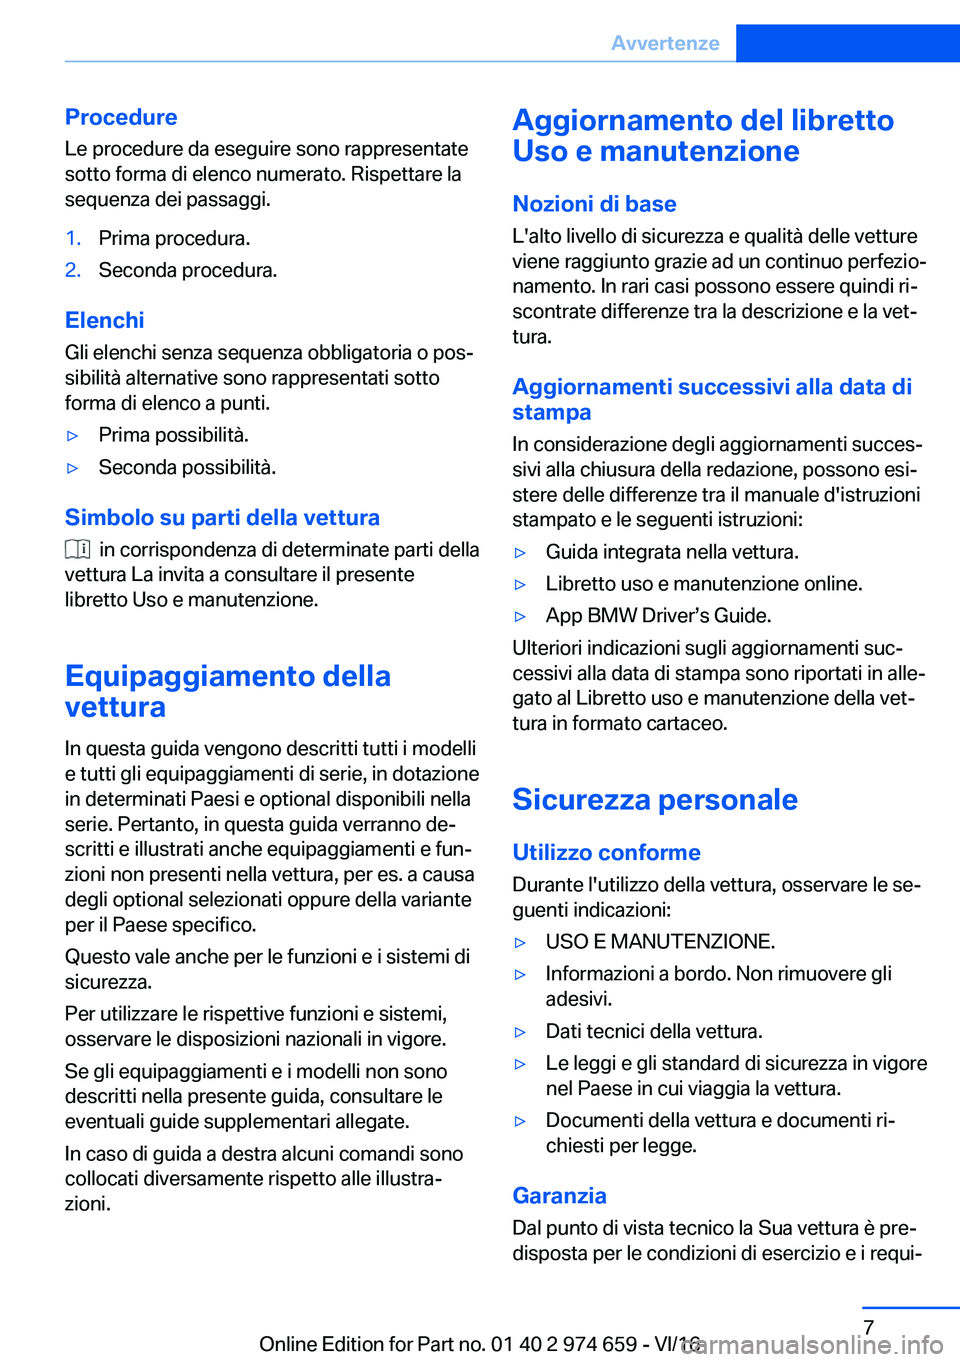 BMW M2 2017  Libretti Di Uso E manutenzione (in Italian) �P�r�o�c�e�d�u�r�e�L�e� �p�r�o�c�e�d�u�r�e� �d�a� �e�s�e�g�u�i�r�e� �s�o�n�o� �r�a�p�p�r�e�s�e�n�t�a�t�e�s�o�t�t�o� �f�o�r�m�a� �d�i� �e�l�e�n�c�o� �n�u�m�e�r�a�t�o�.� �R�i�s�p�e�t�t�a�r�e� �l�a�s�e�q